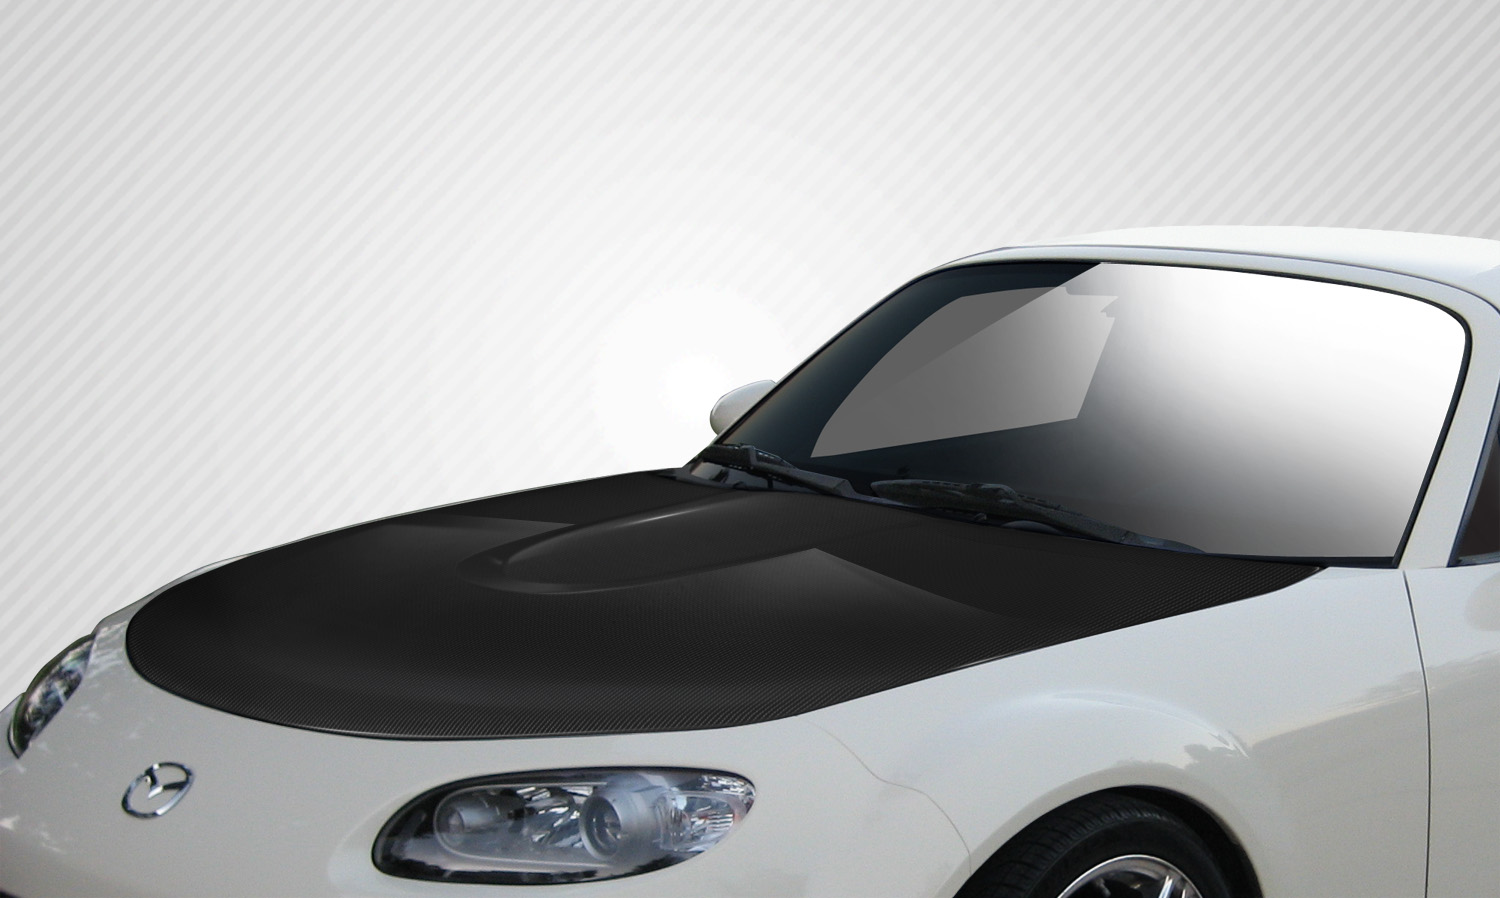 2006 Mazda Miata ALL - Carbon Fiber Fibre Hood Bodykit - 2006-2015 Mazda Miata Carbon Creations OEM Hood - 1 Piece